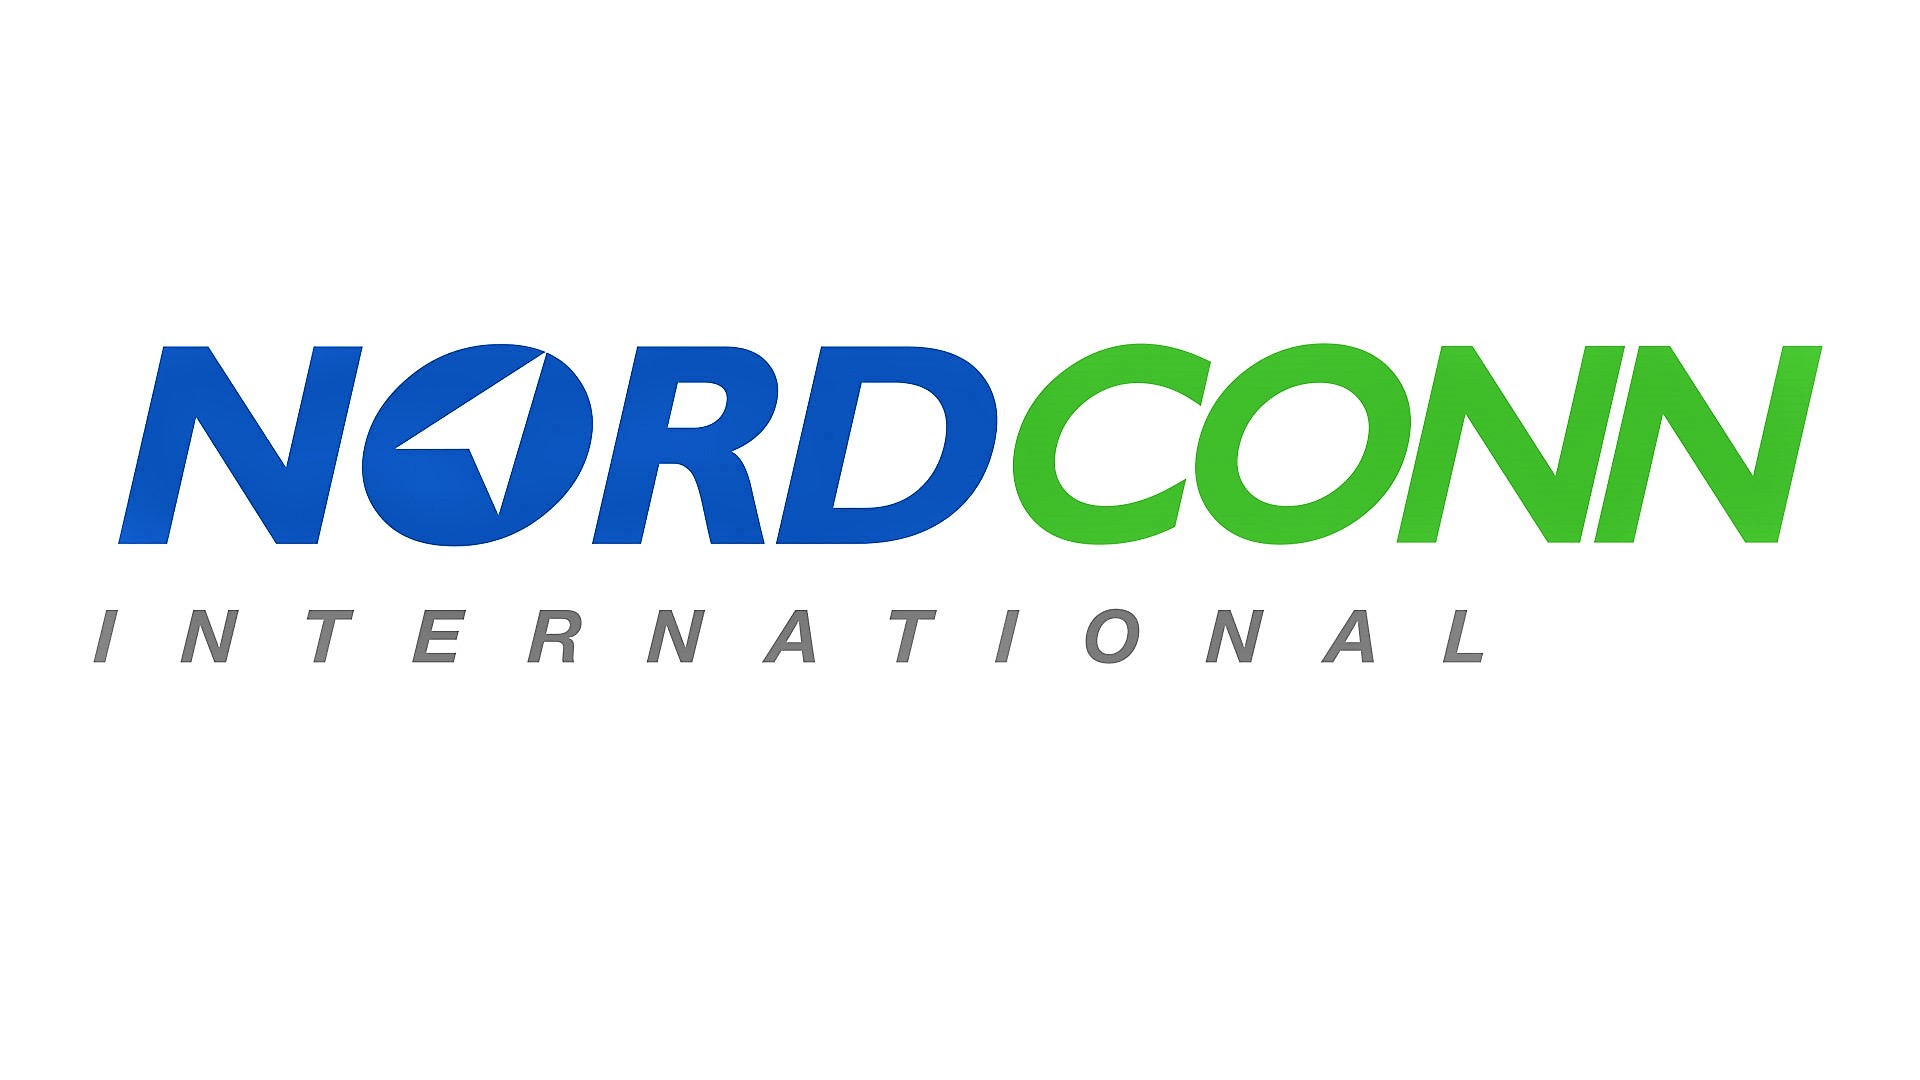 NORDCONN International Informatikai és Tanácsadó Korlátolt Felelősségű Társaság